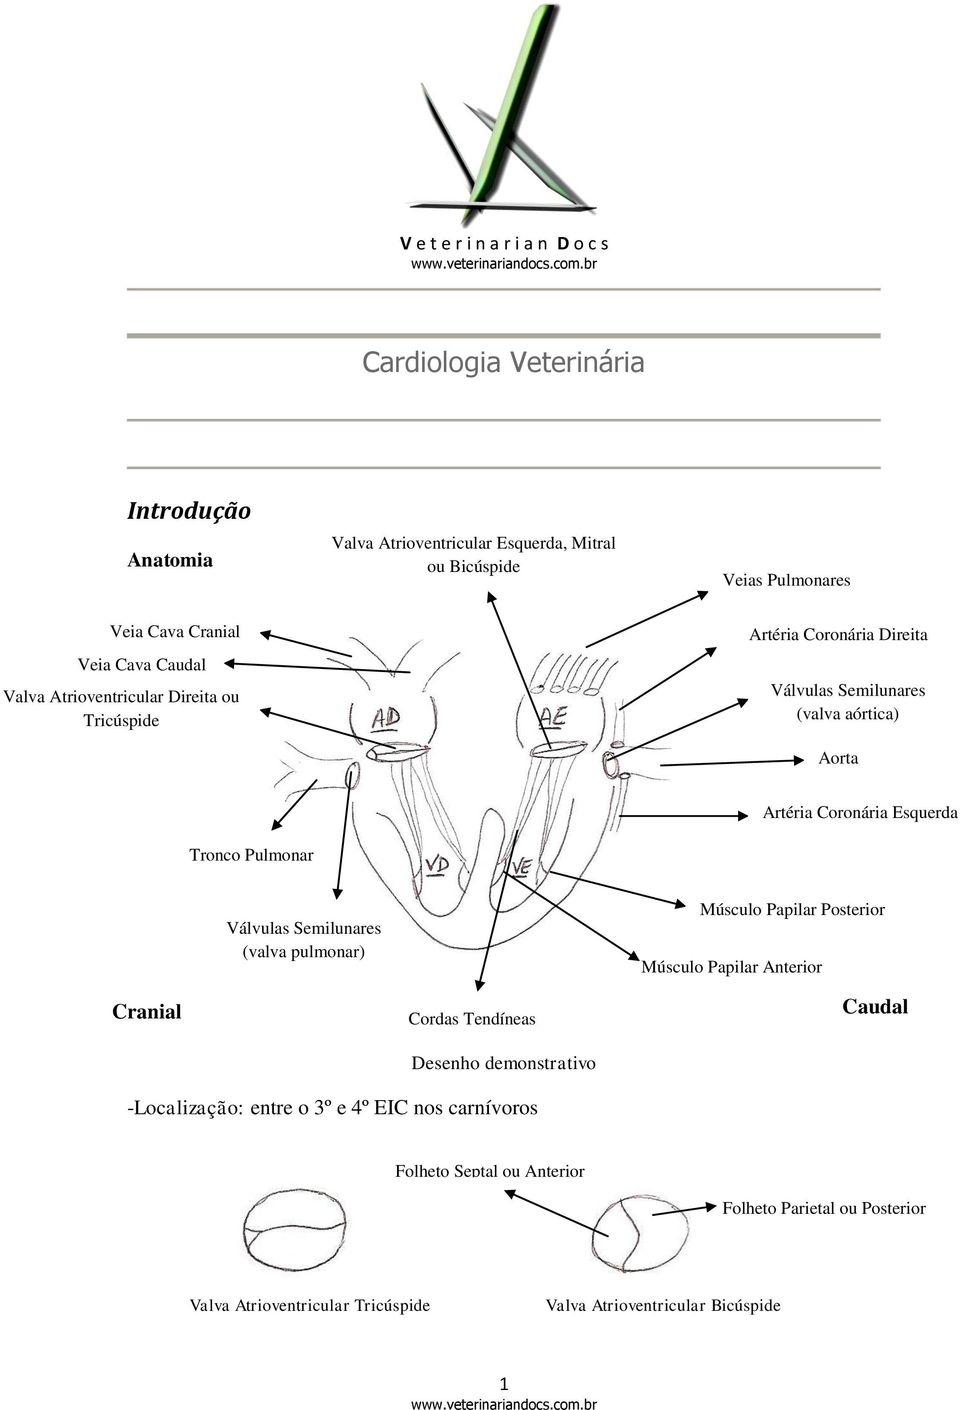 Coronária Esquerda Válvulas Semilunares (valva pulmonar) Músculo Papilar Posterior Músculo Papilar Anterior Cranial Cordas Tendíneas Desenho demonstrativo Caudal